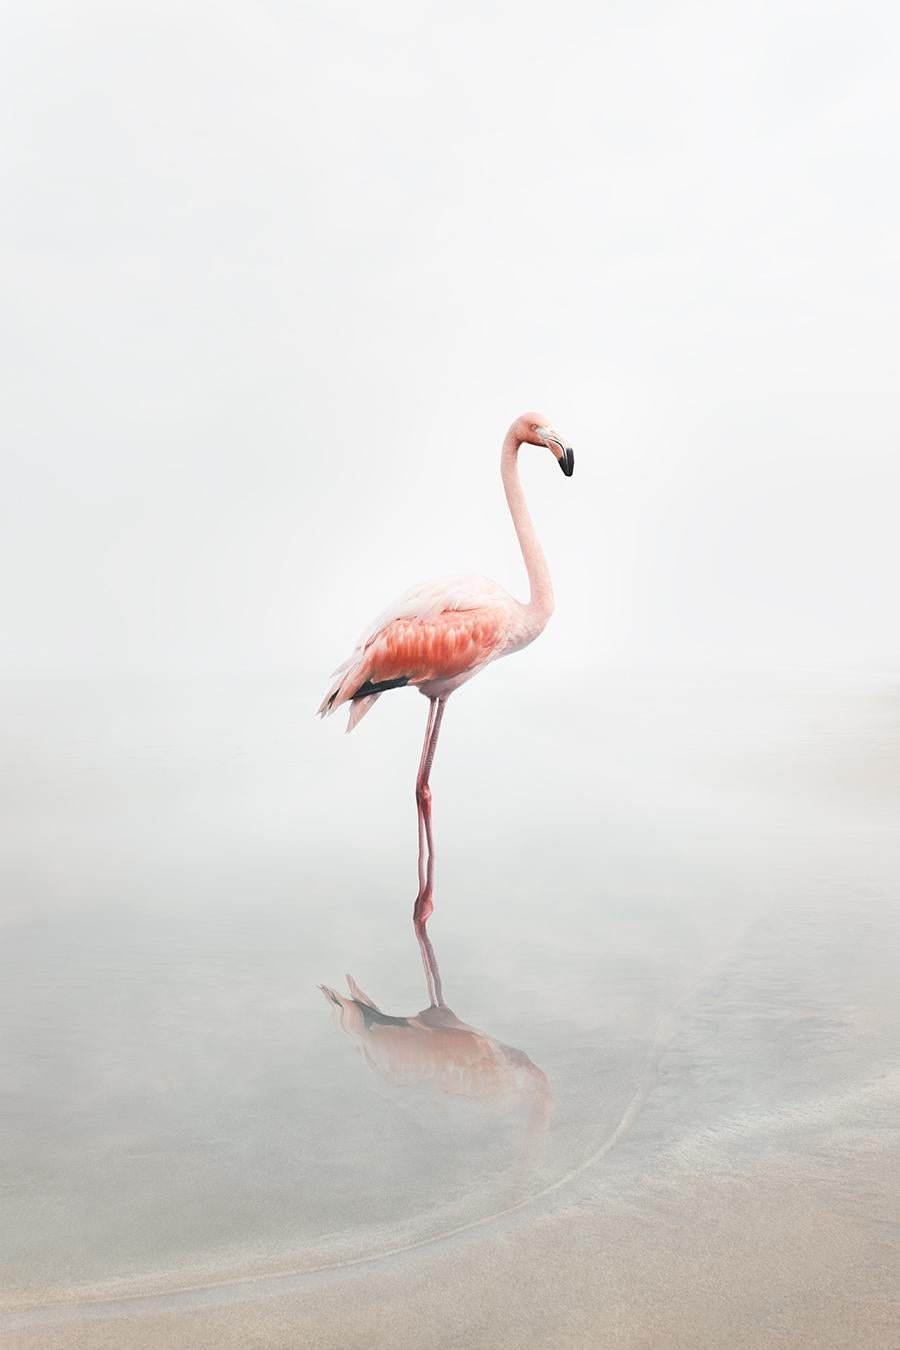 Alice Zilberberg - For Now Flamingo, Fotografie 2019, gedruckt nach